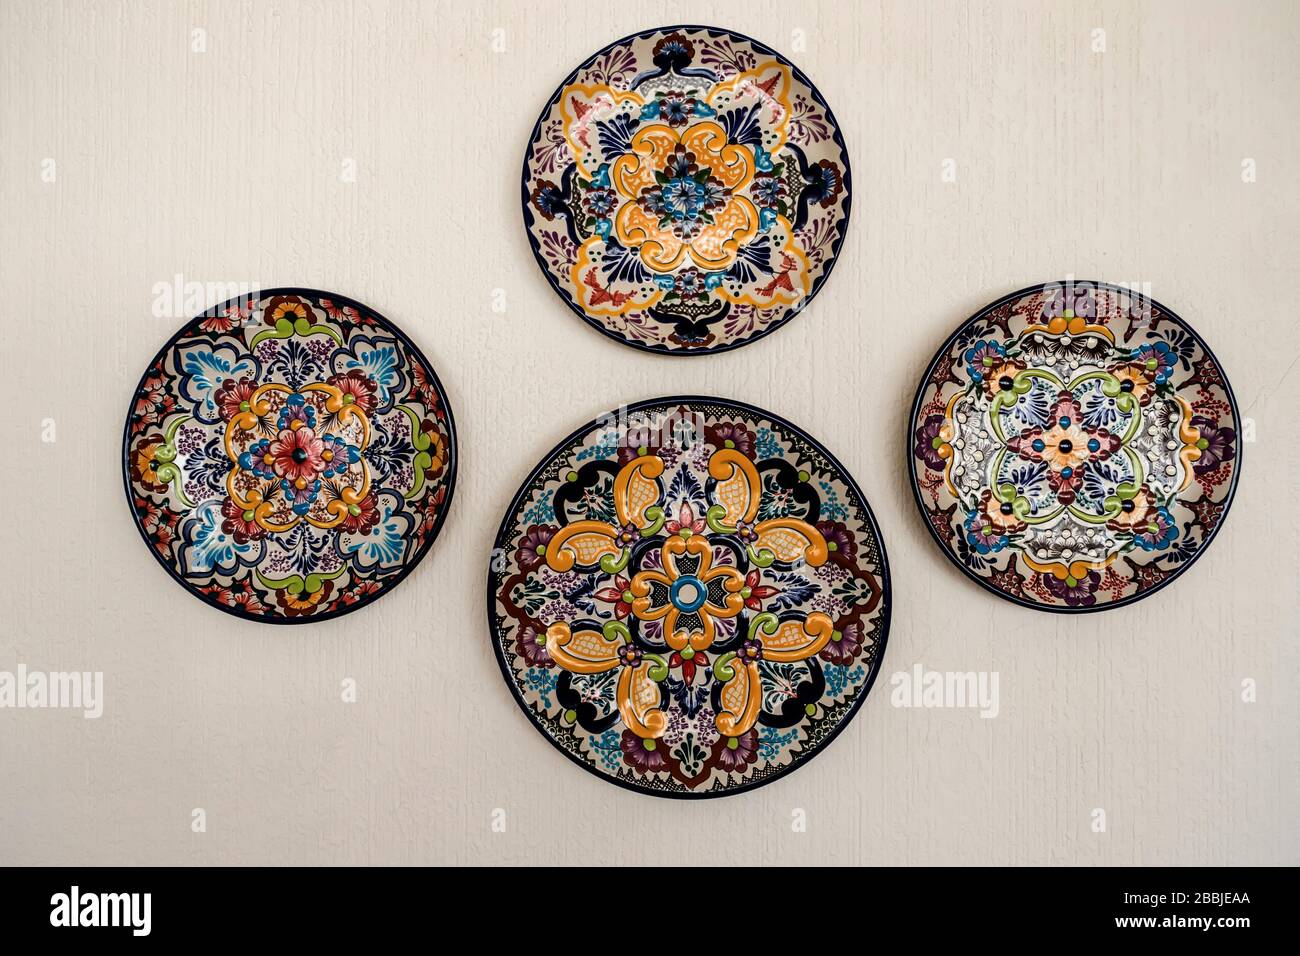 Platos decorativos de Talavera mexicana en la pared Foto de stock